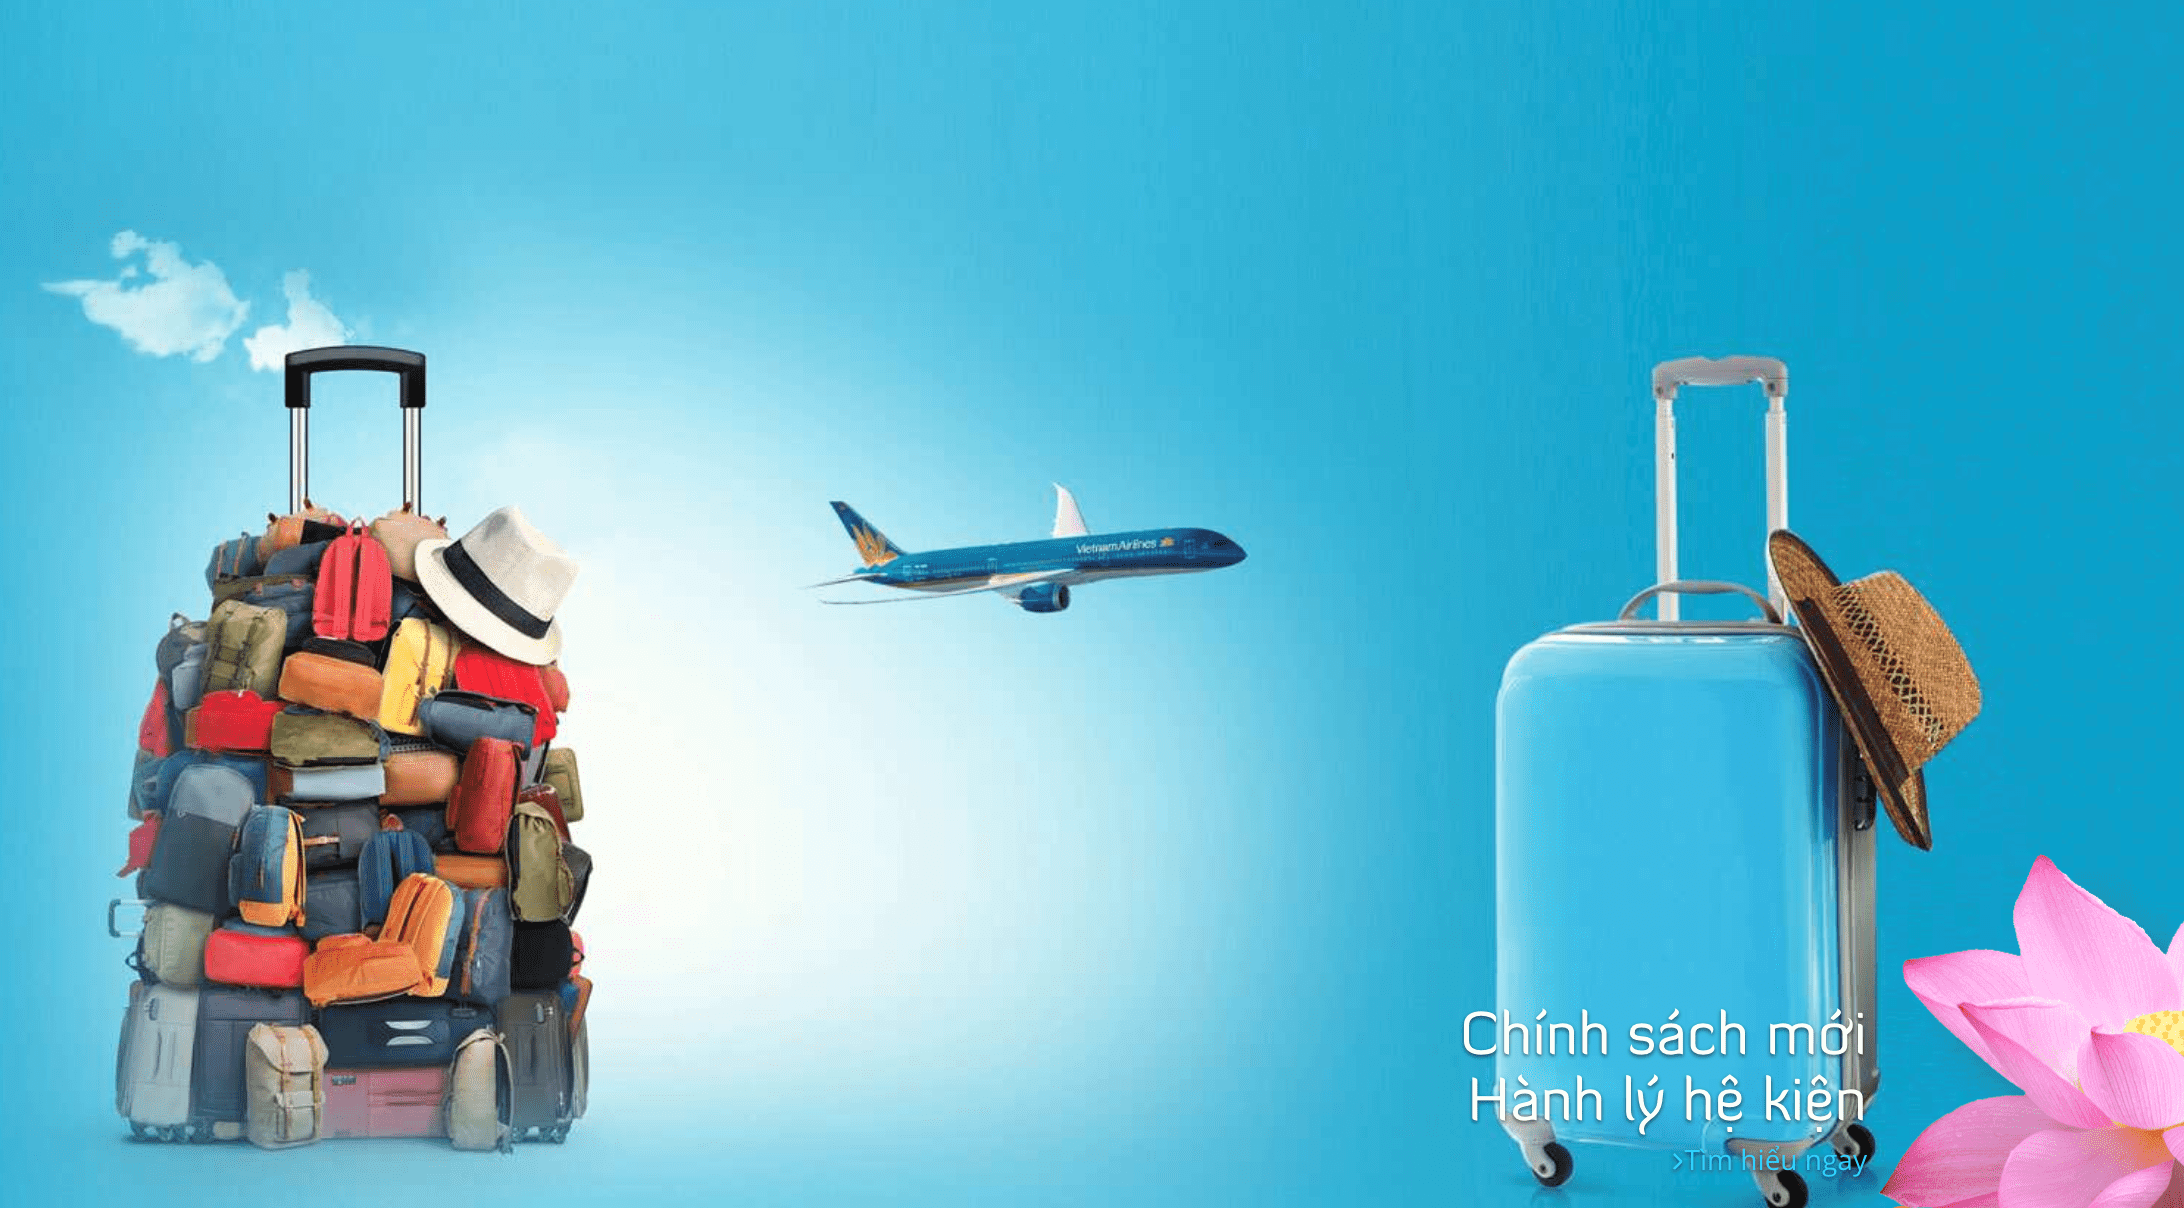 Vietnam Airlines sẽ chuyển hành lý hệ kiện